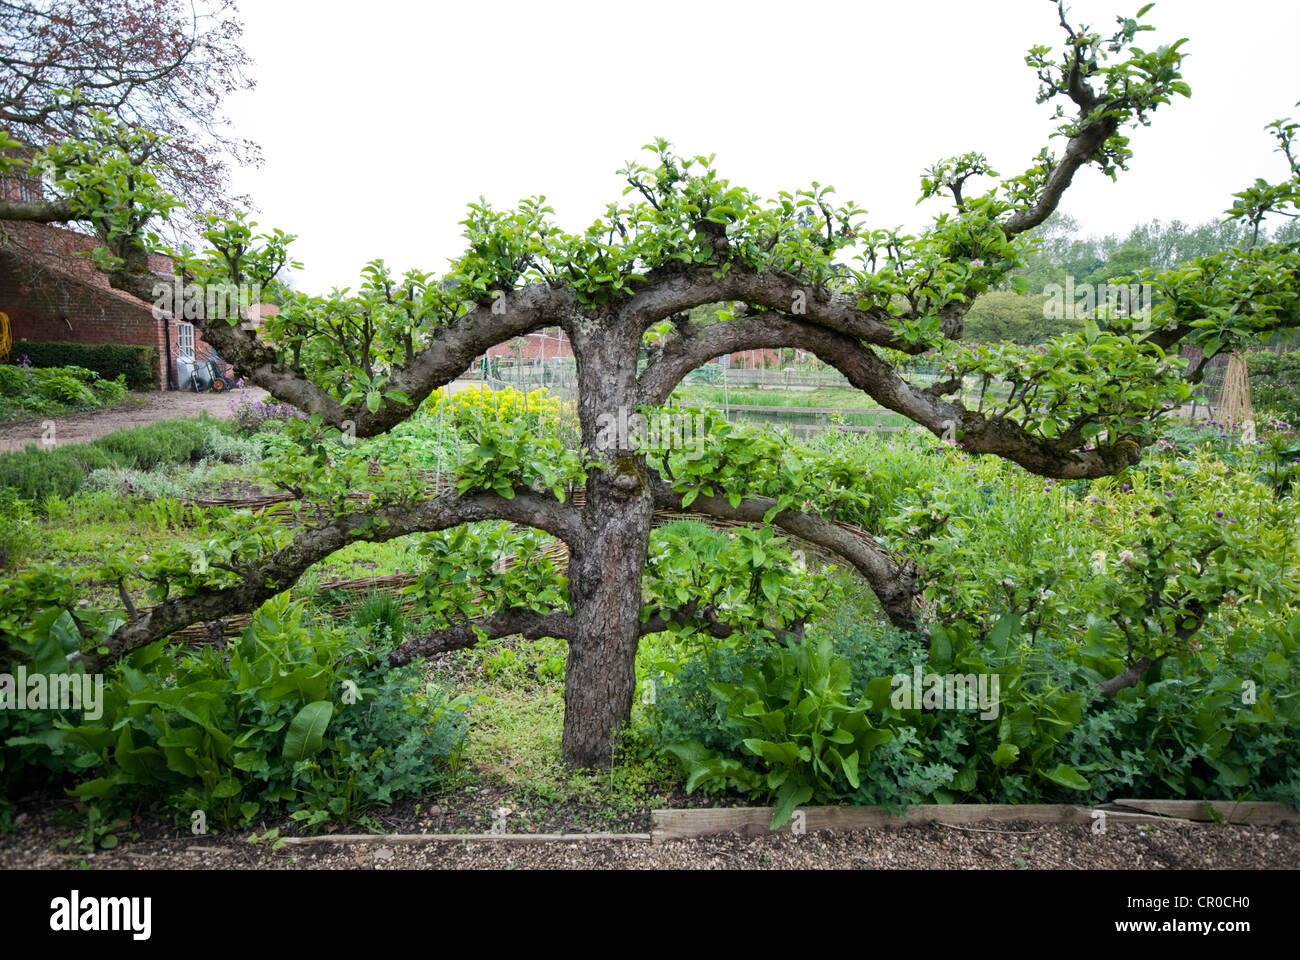 Apple a spalliera albero che cresce in un paese walled garden Foto Stock